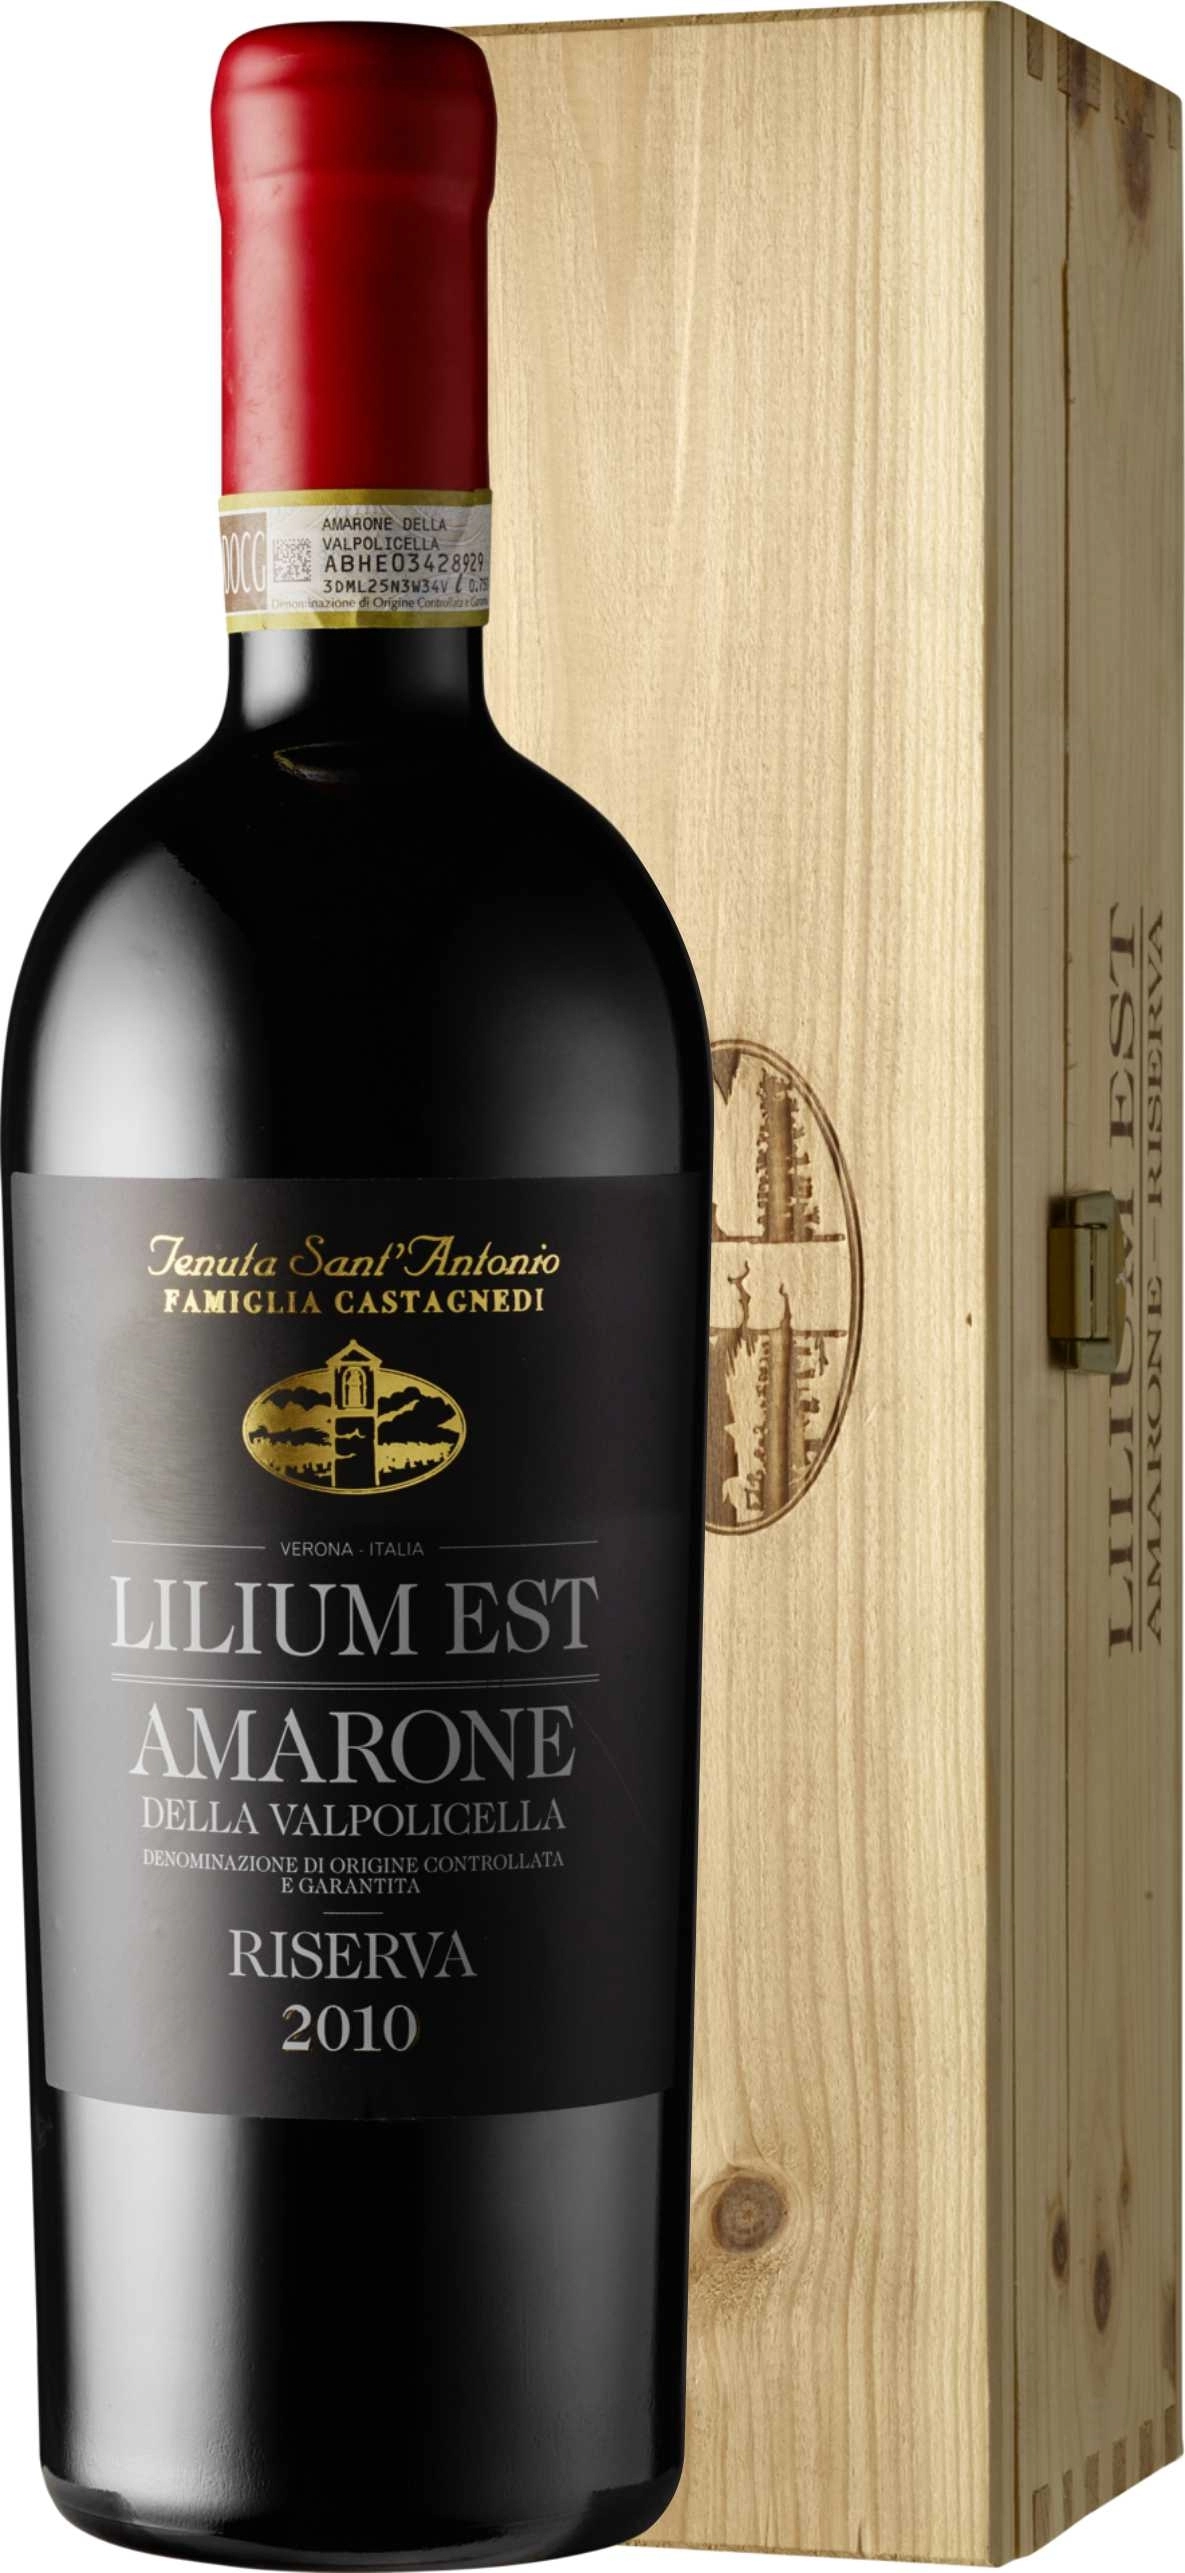  Vin rosu Tenuta Sant'antonio Amarone Riserva "lilium Est" 2010